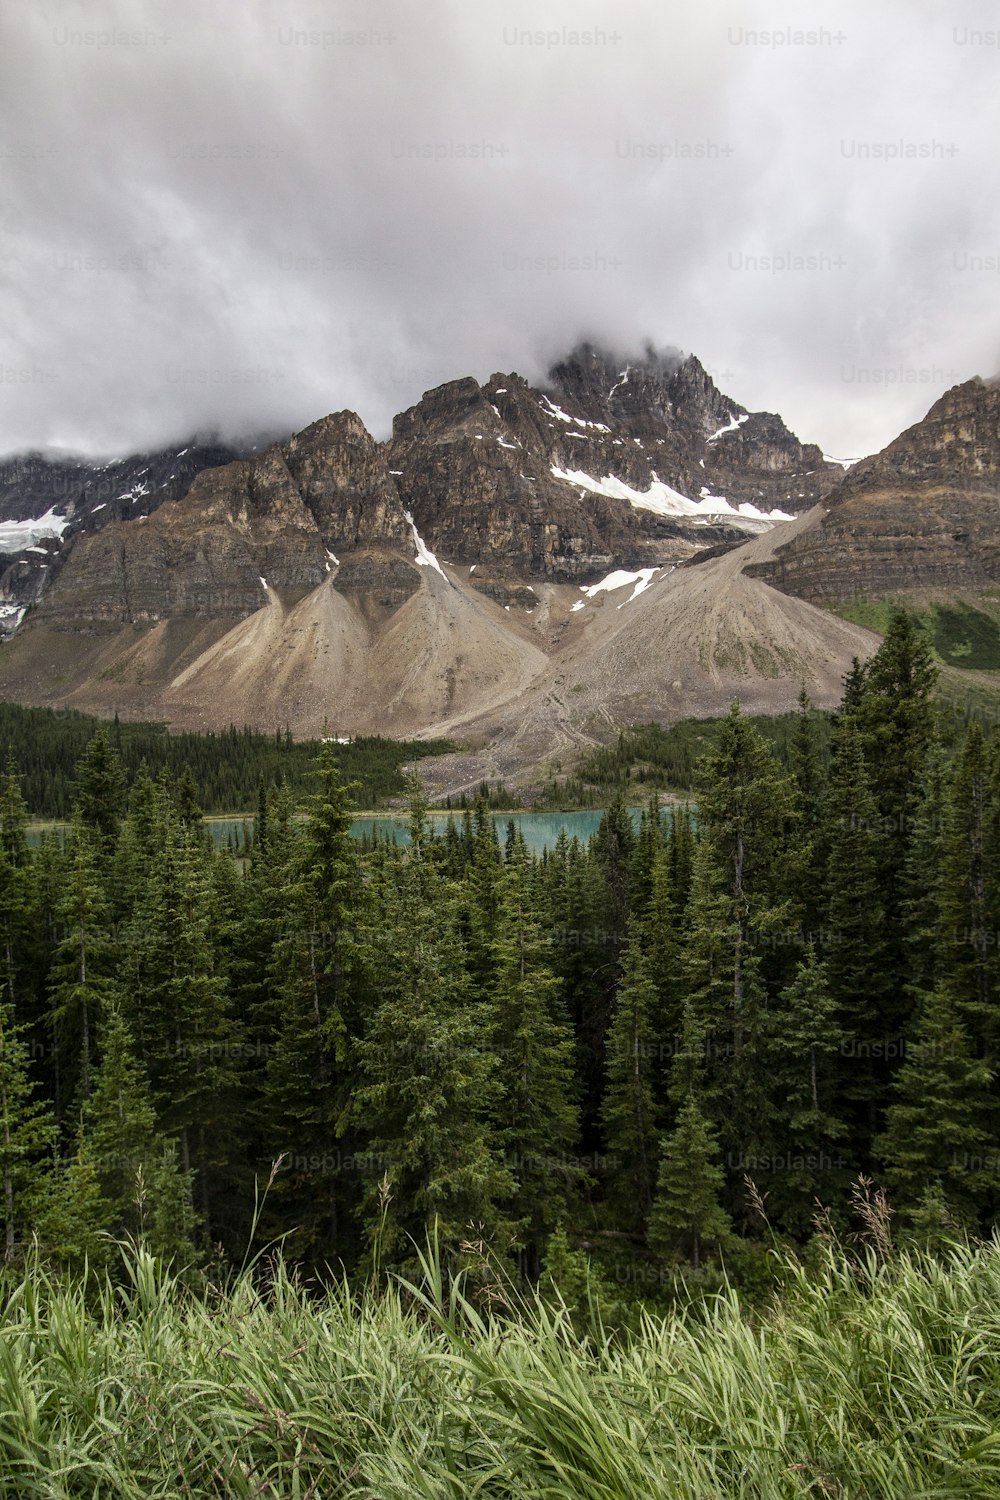 Una veduta di una catena montuosa con un lago in primo piano